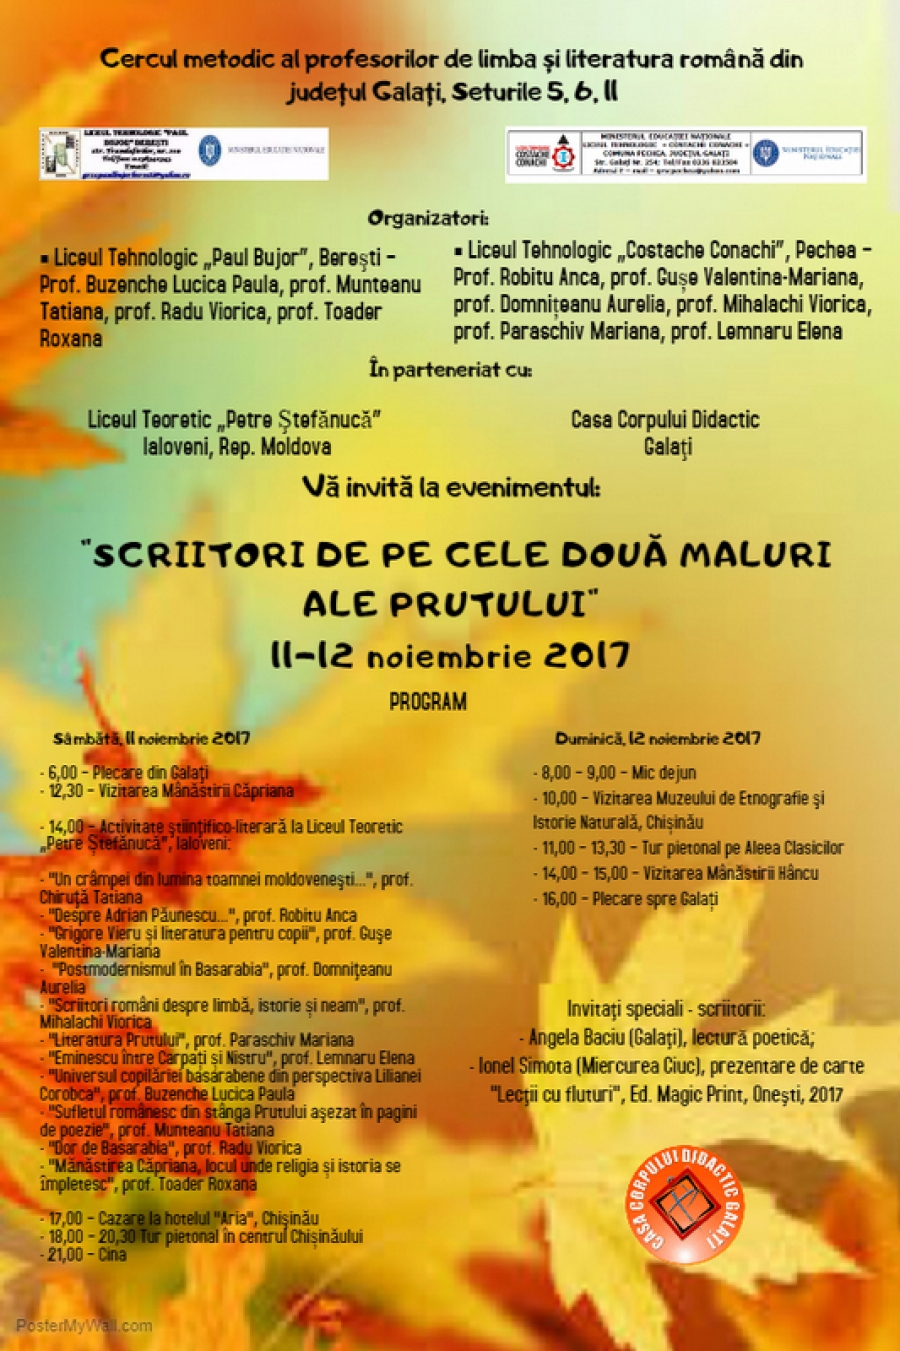 Întâlnire ştiinţifico-literară a profesorilor de limba şi literatura română